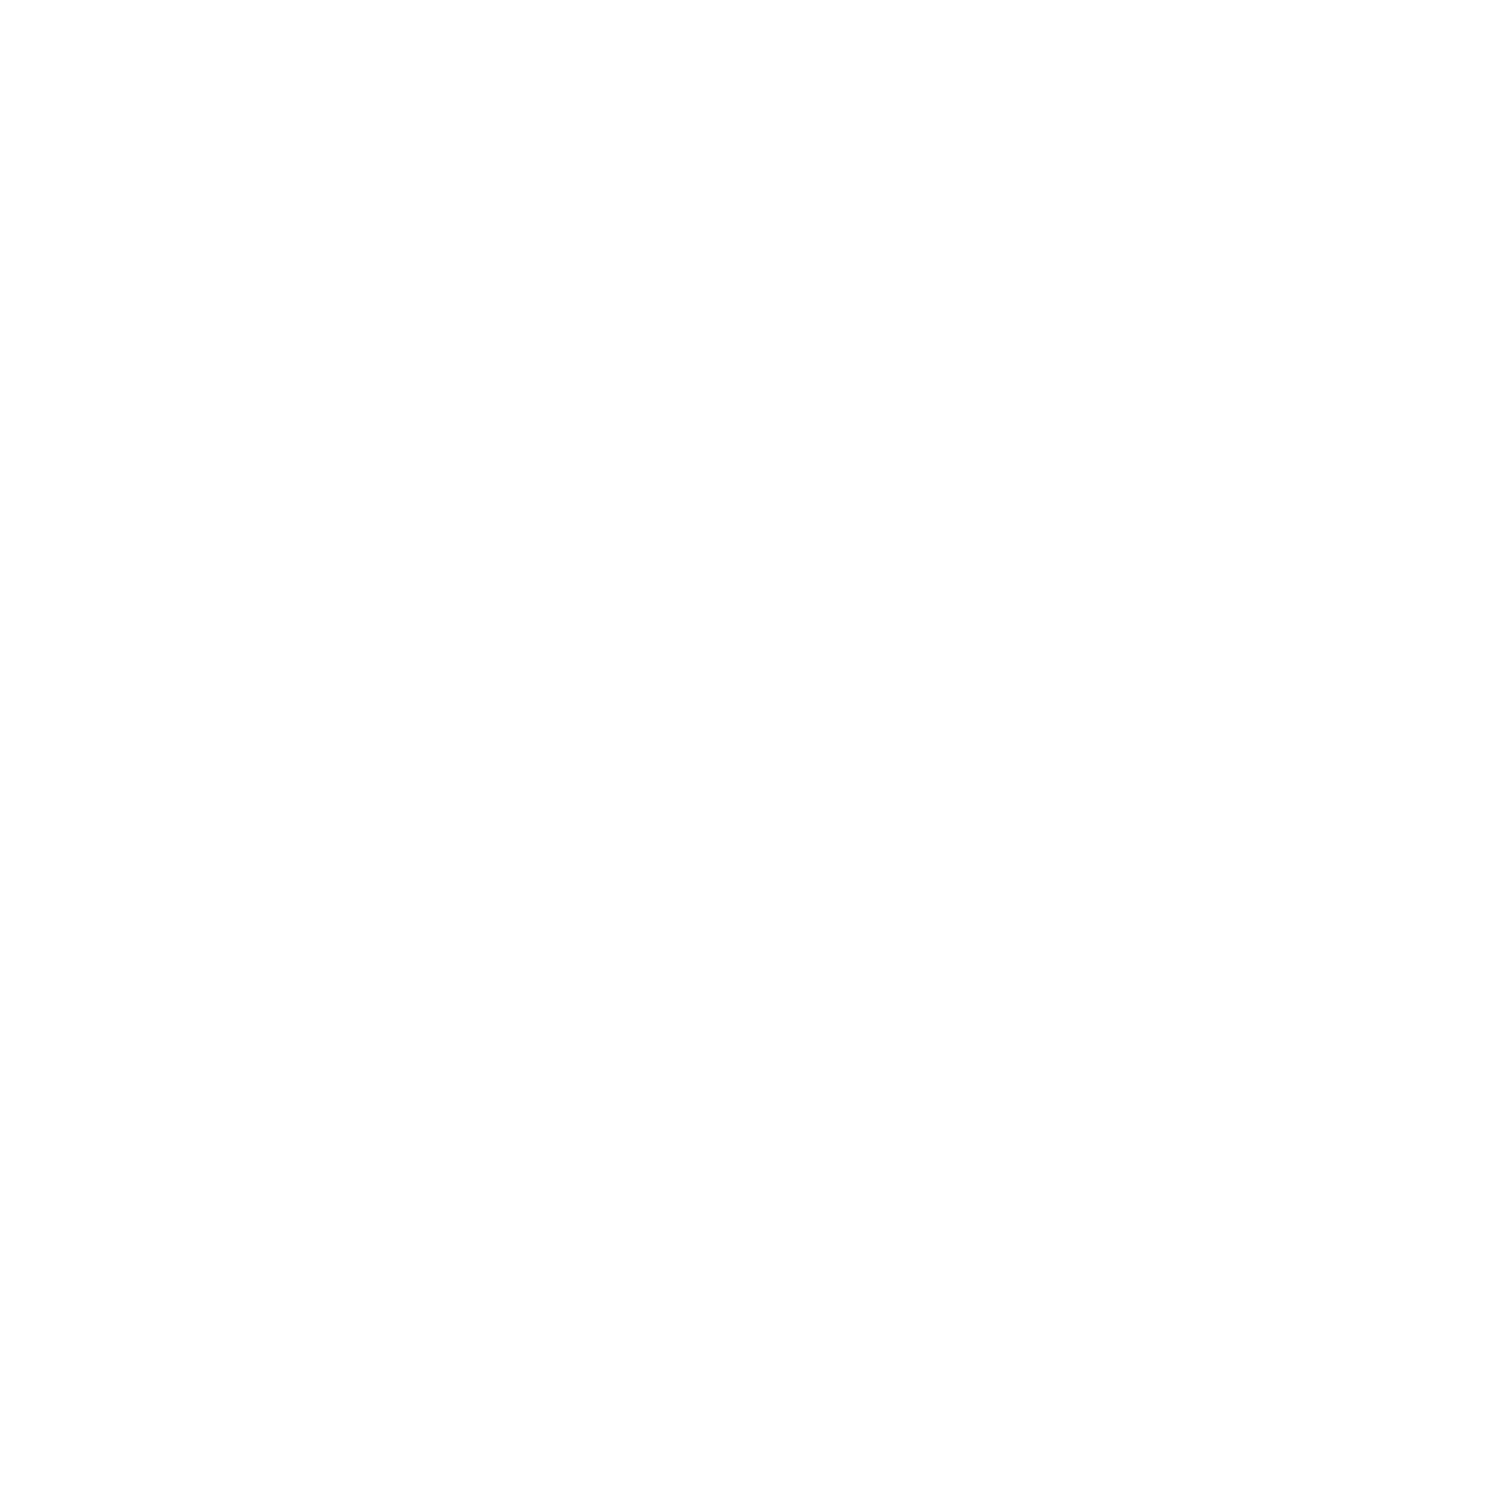 Blade Funding